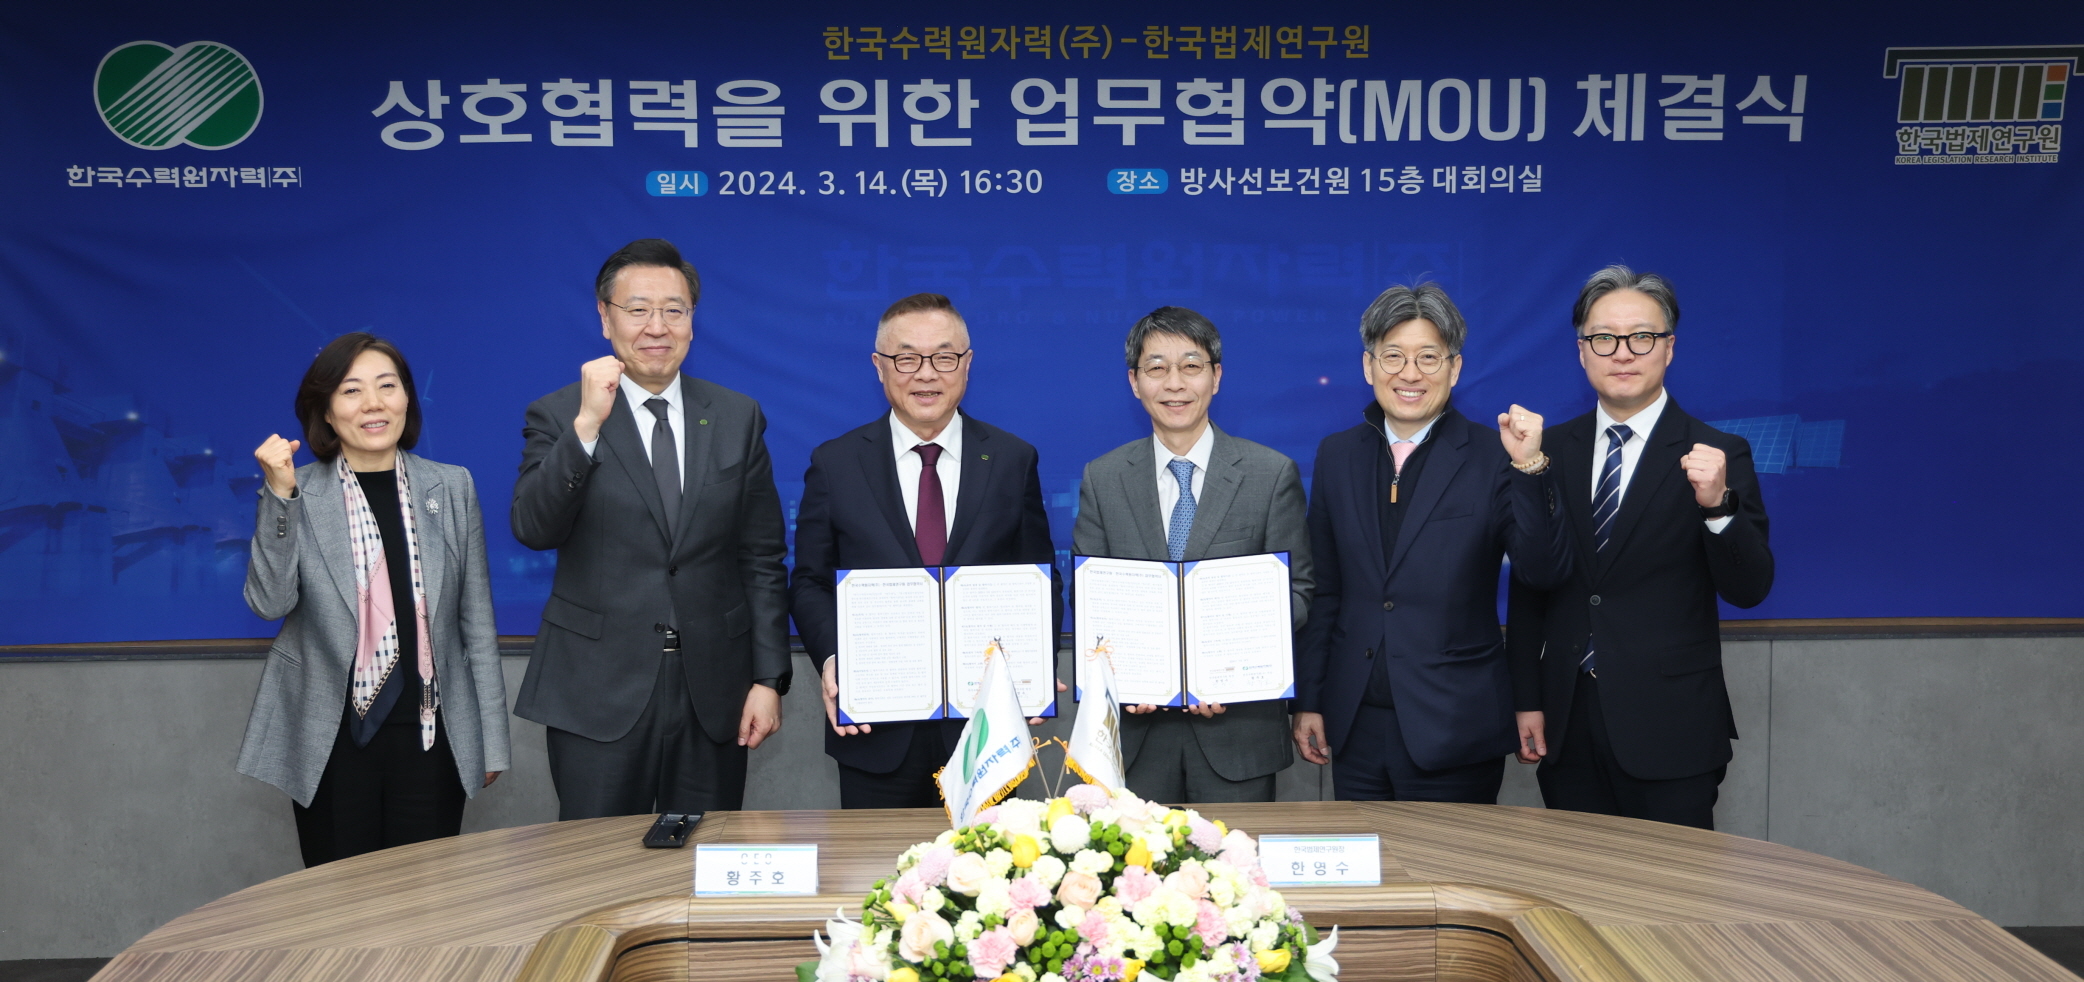 한국수력원자력과 한국법제연구원 관계자들이 원전 분야 법제 협력 및 공동연구 활성화를 위한 업무협약을 체결하고 있다. /한수원제공